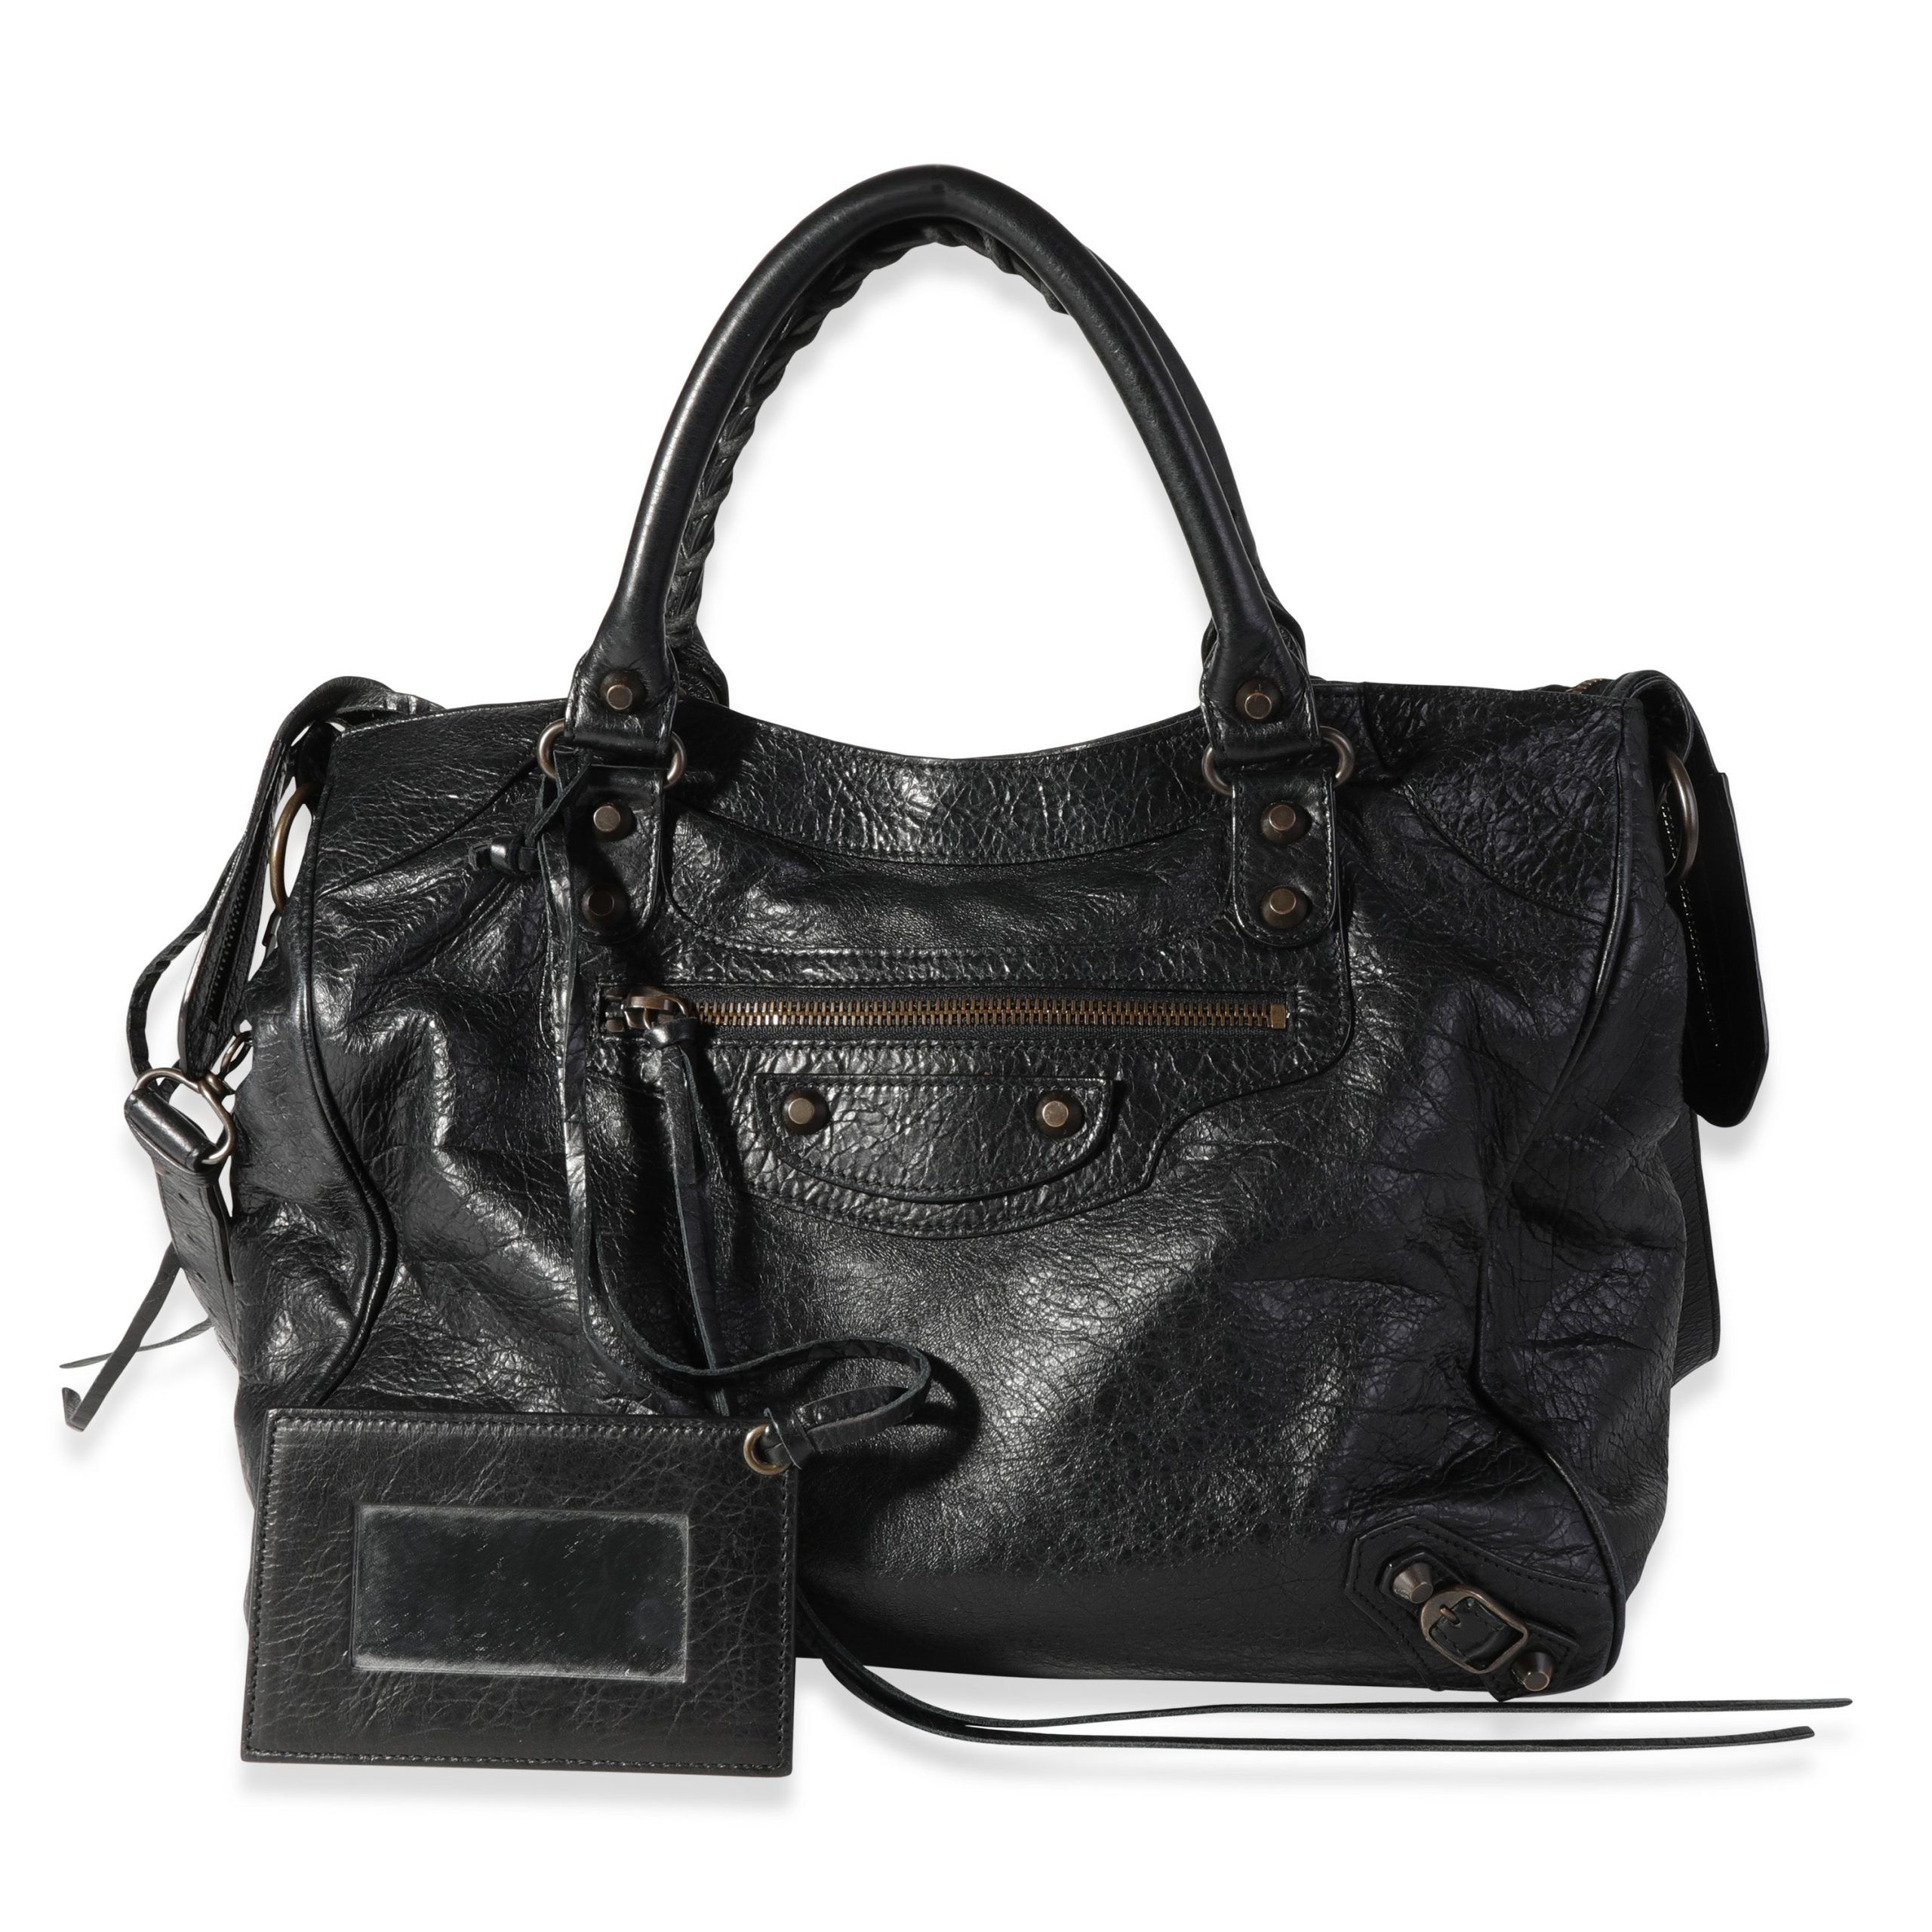 Balenciaga Balenciaga Black Leather Classic Velo Bag Size ONE SIZE - 1 Preview